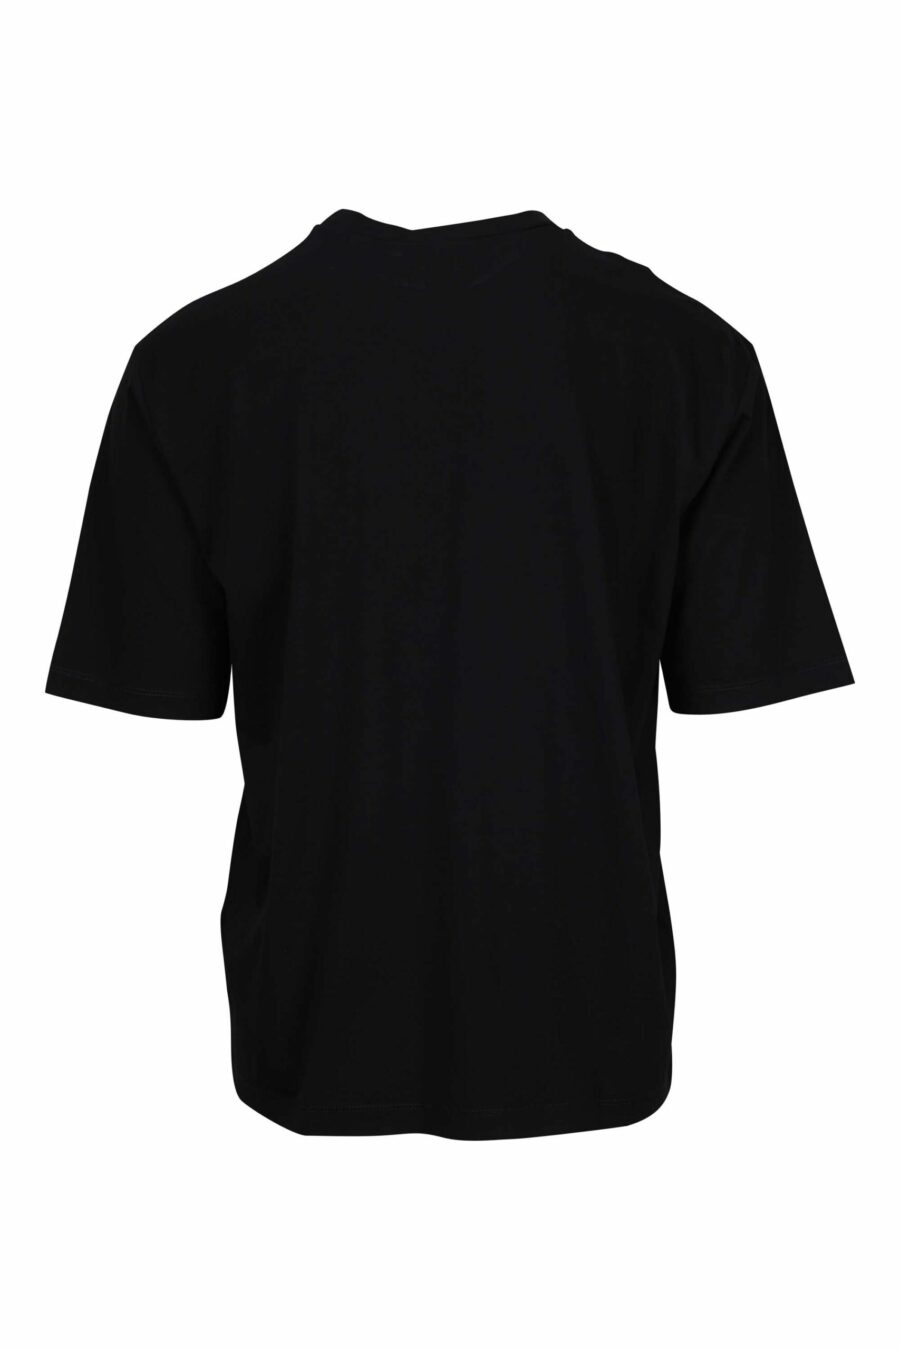 T-shirt preta de tamanho grande com o logótipo do cartão de crédito por baixo - 8054148265618 1 scaled